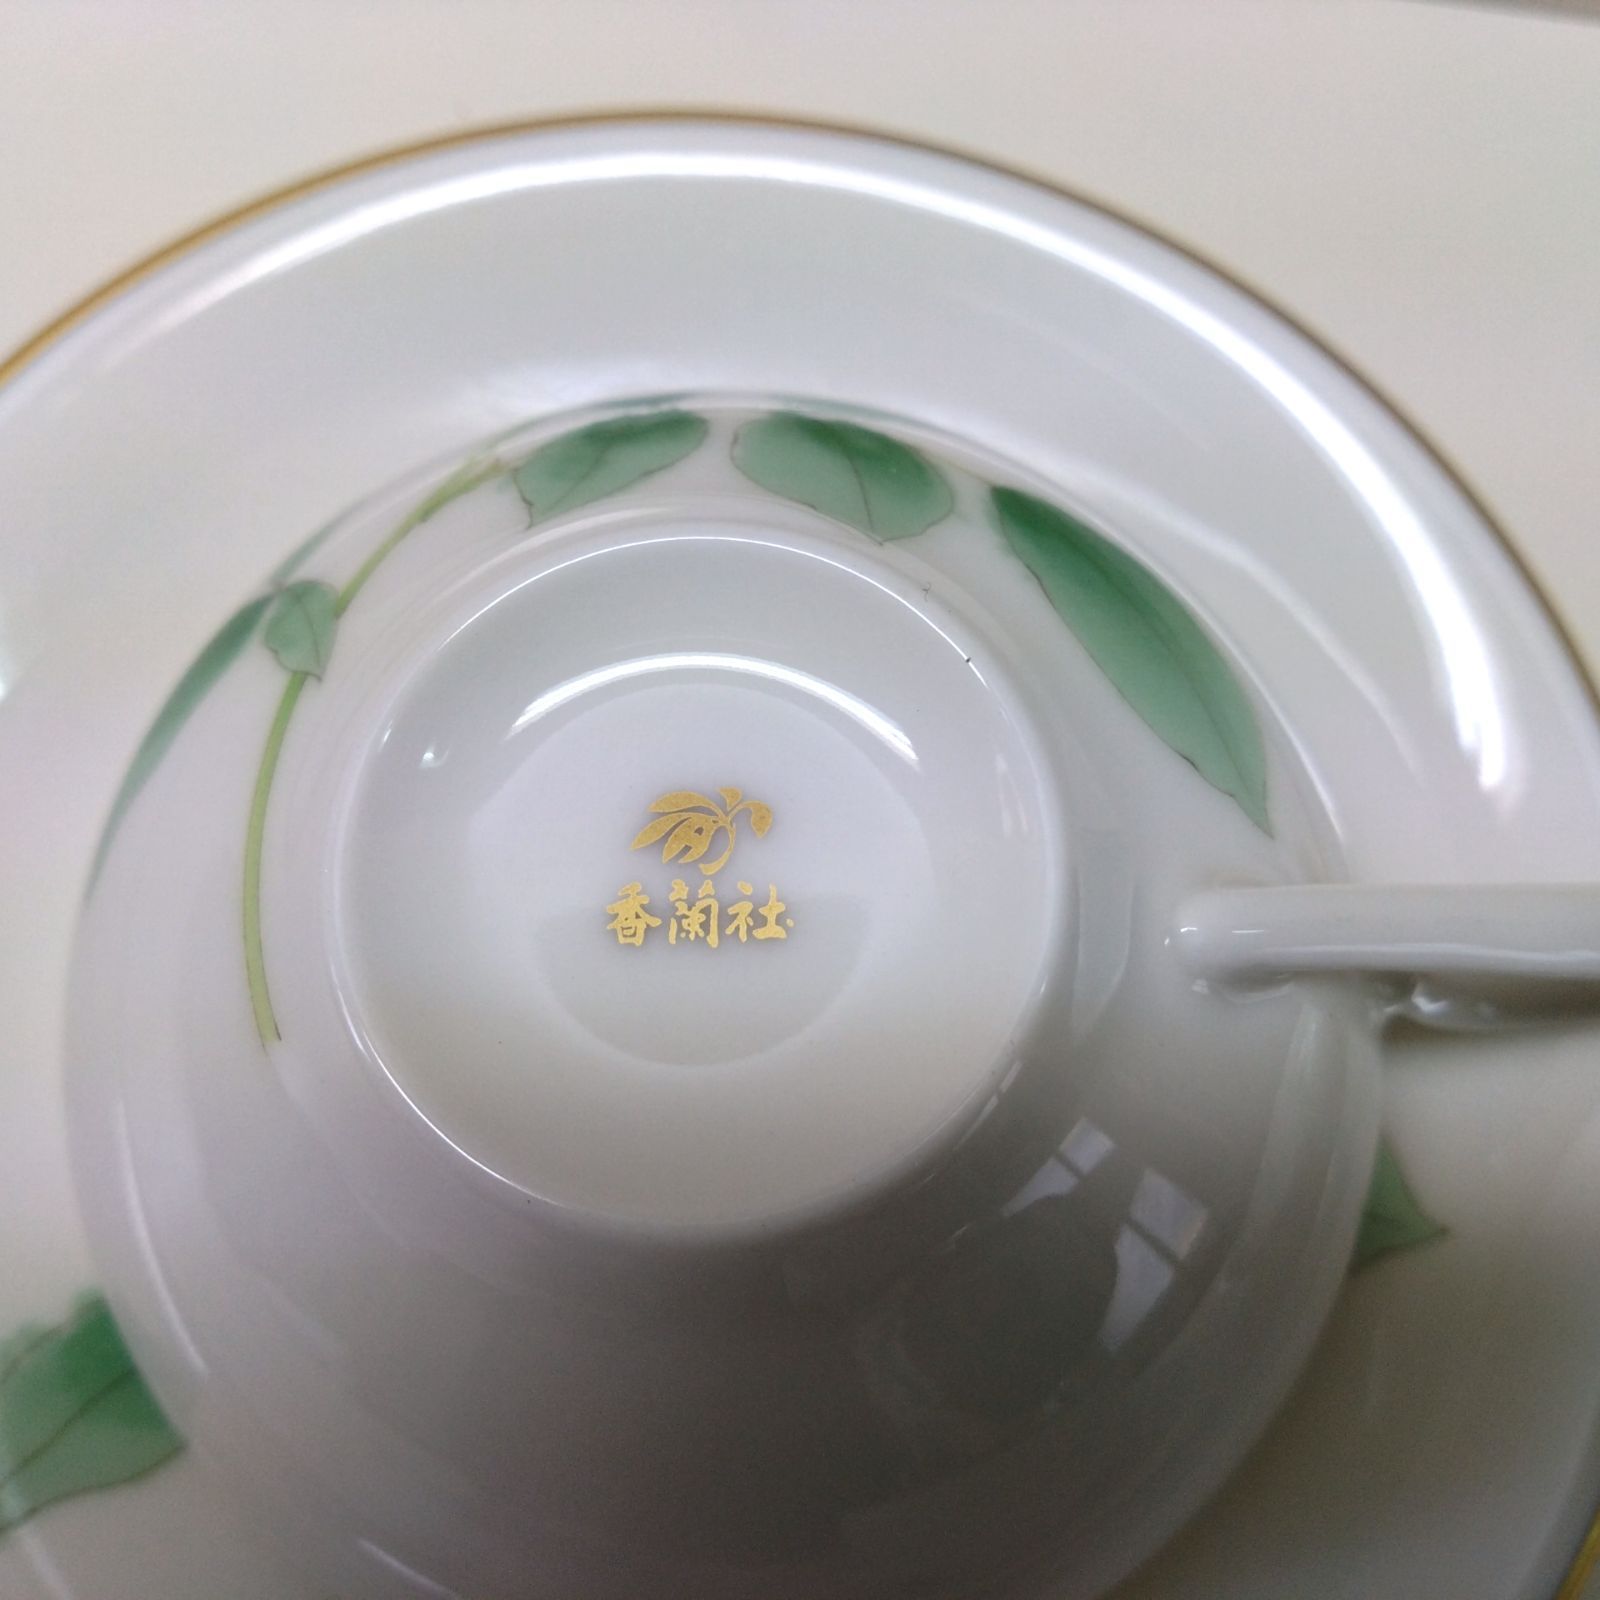 42 香蘭社 ブライトローズ ティー碗皿揃 カップ&ソーサー 薔薇 金彩